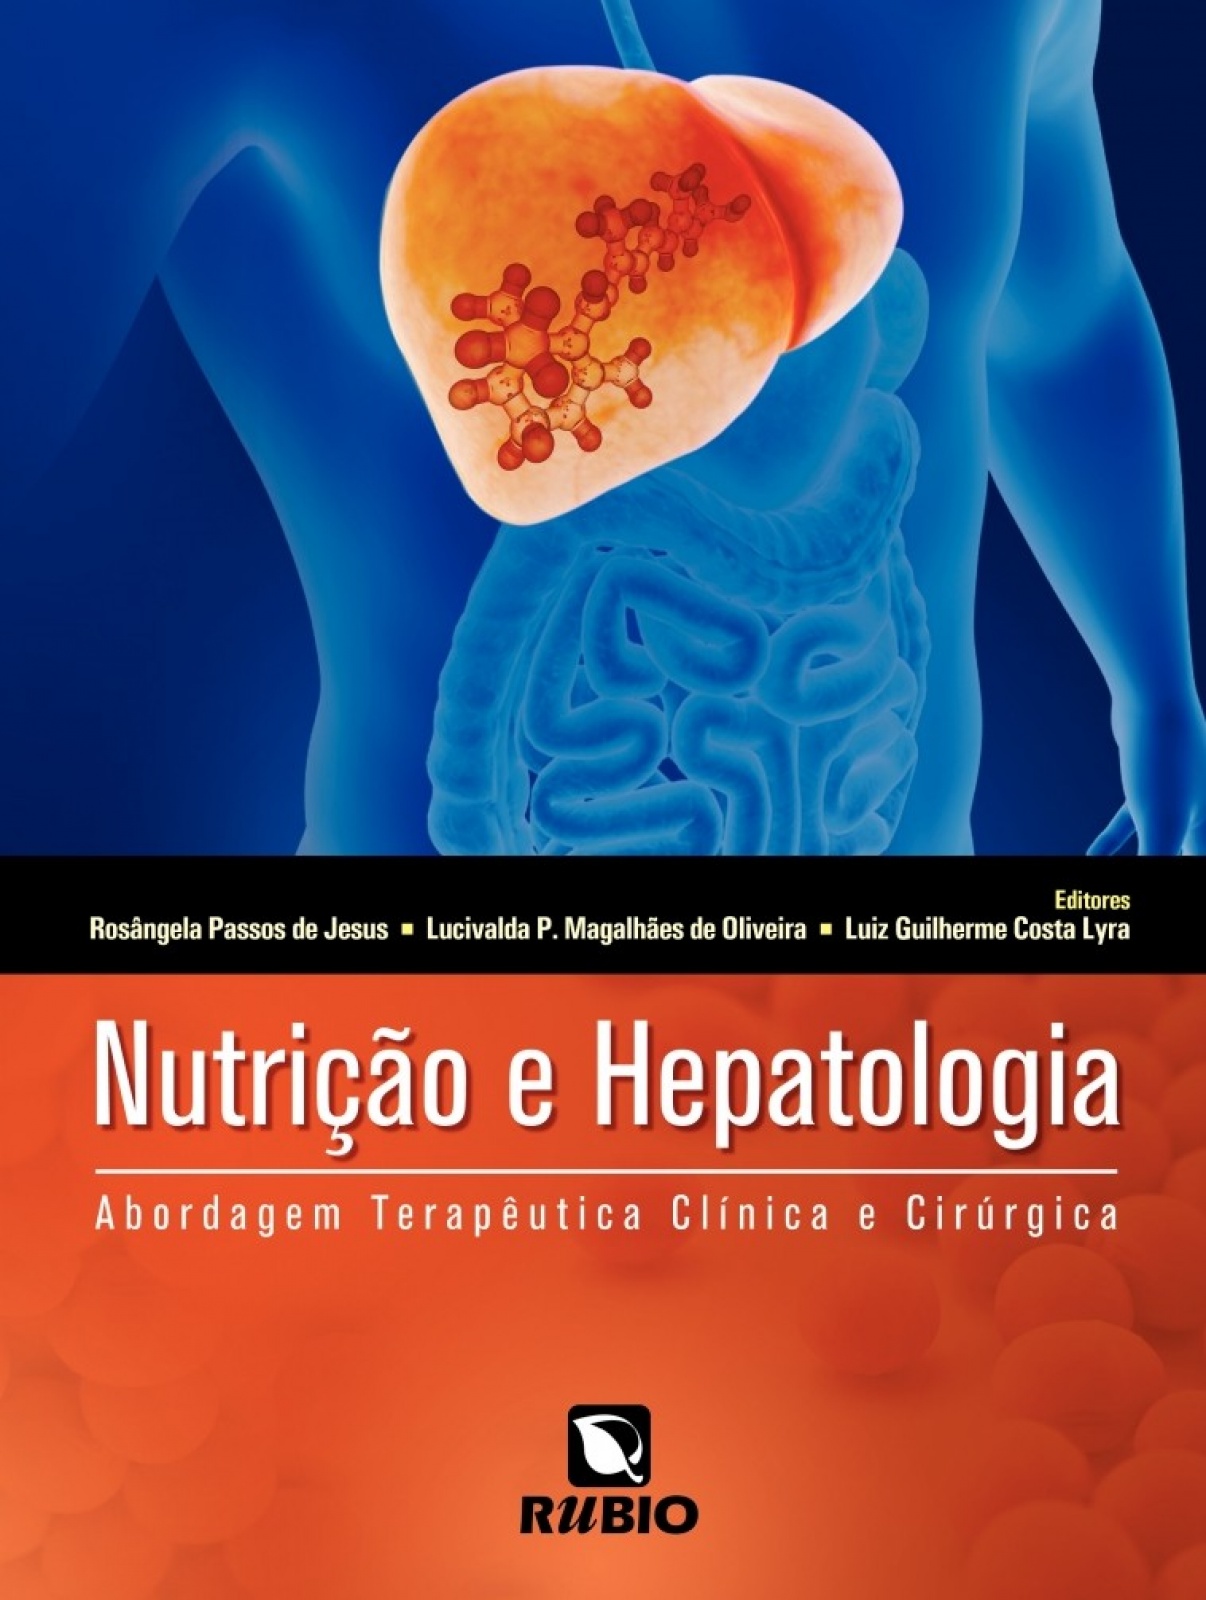 Nutrição e Hepatologia - Abordagem Terapêutica Clínica e Cirúrgica